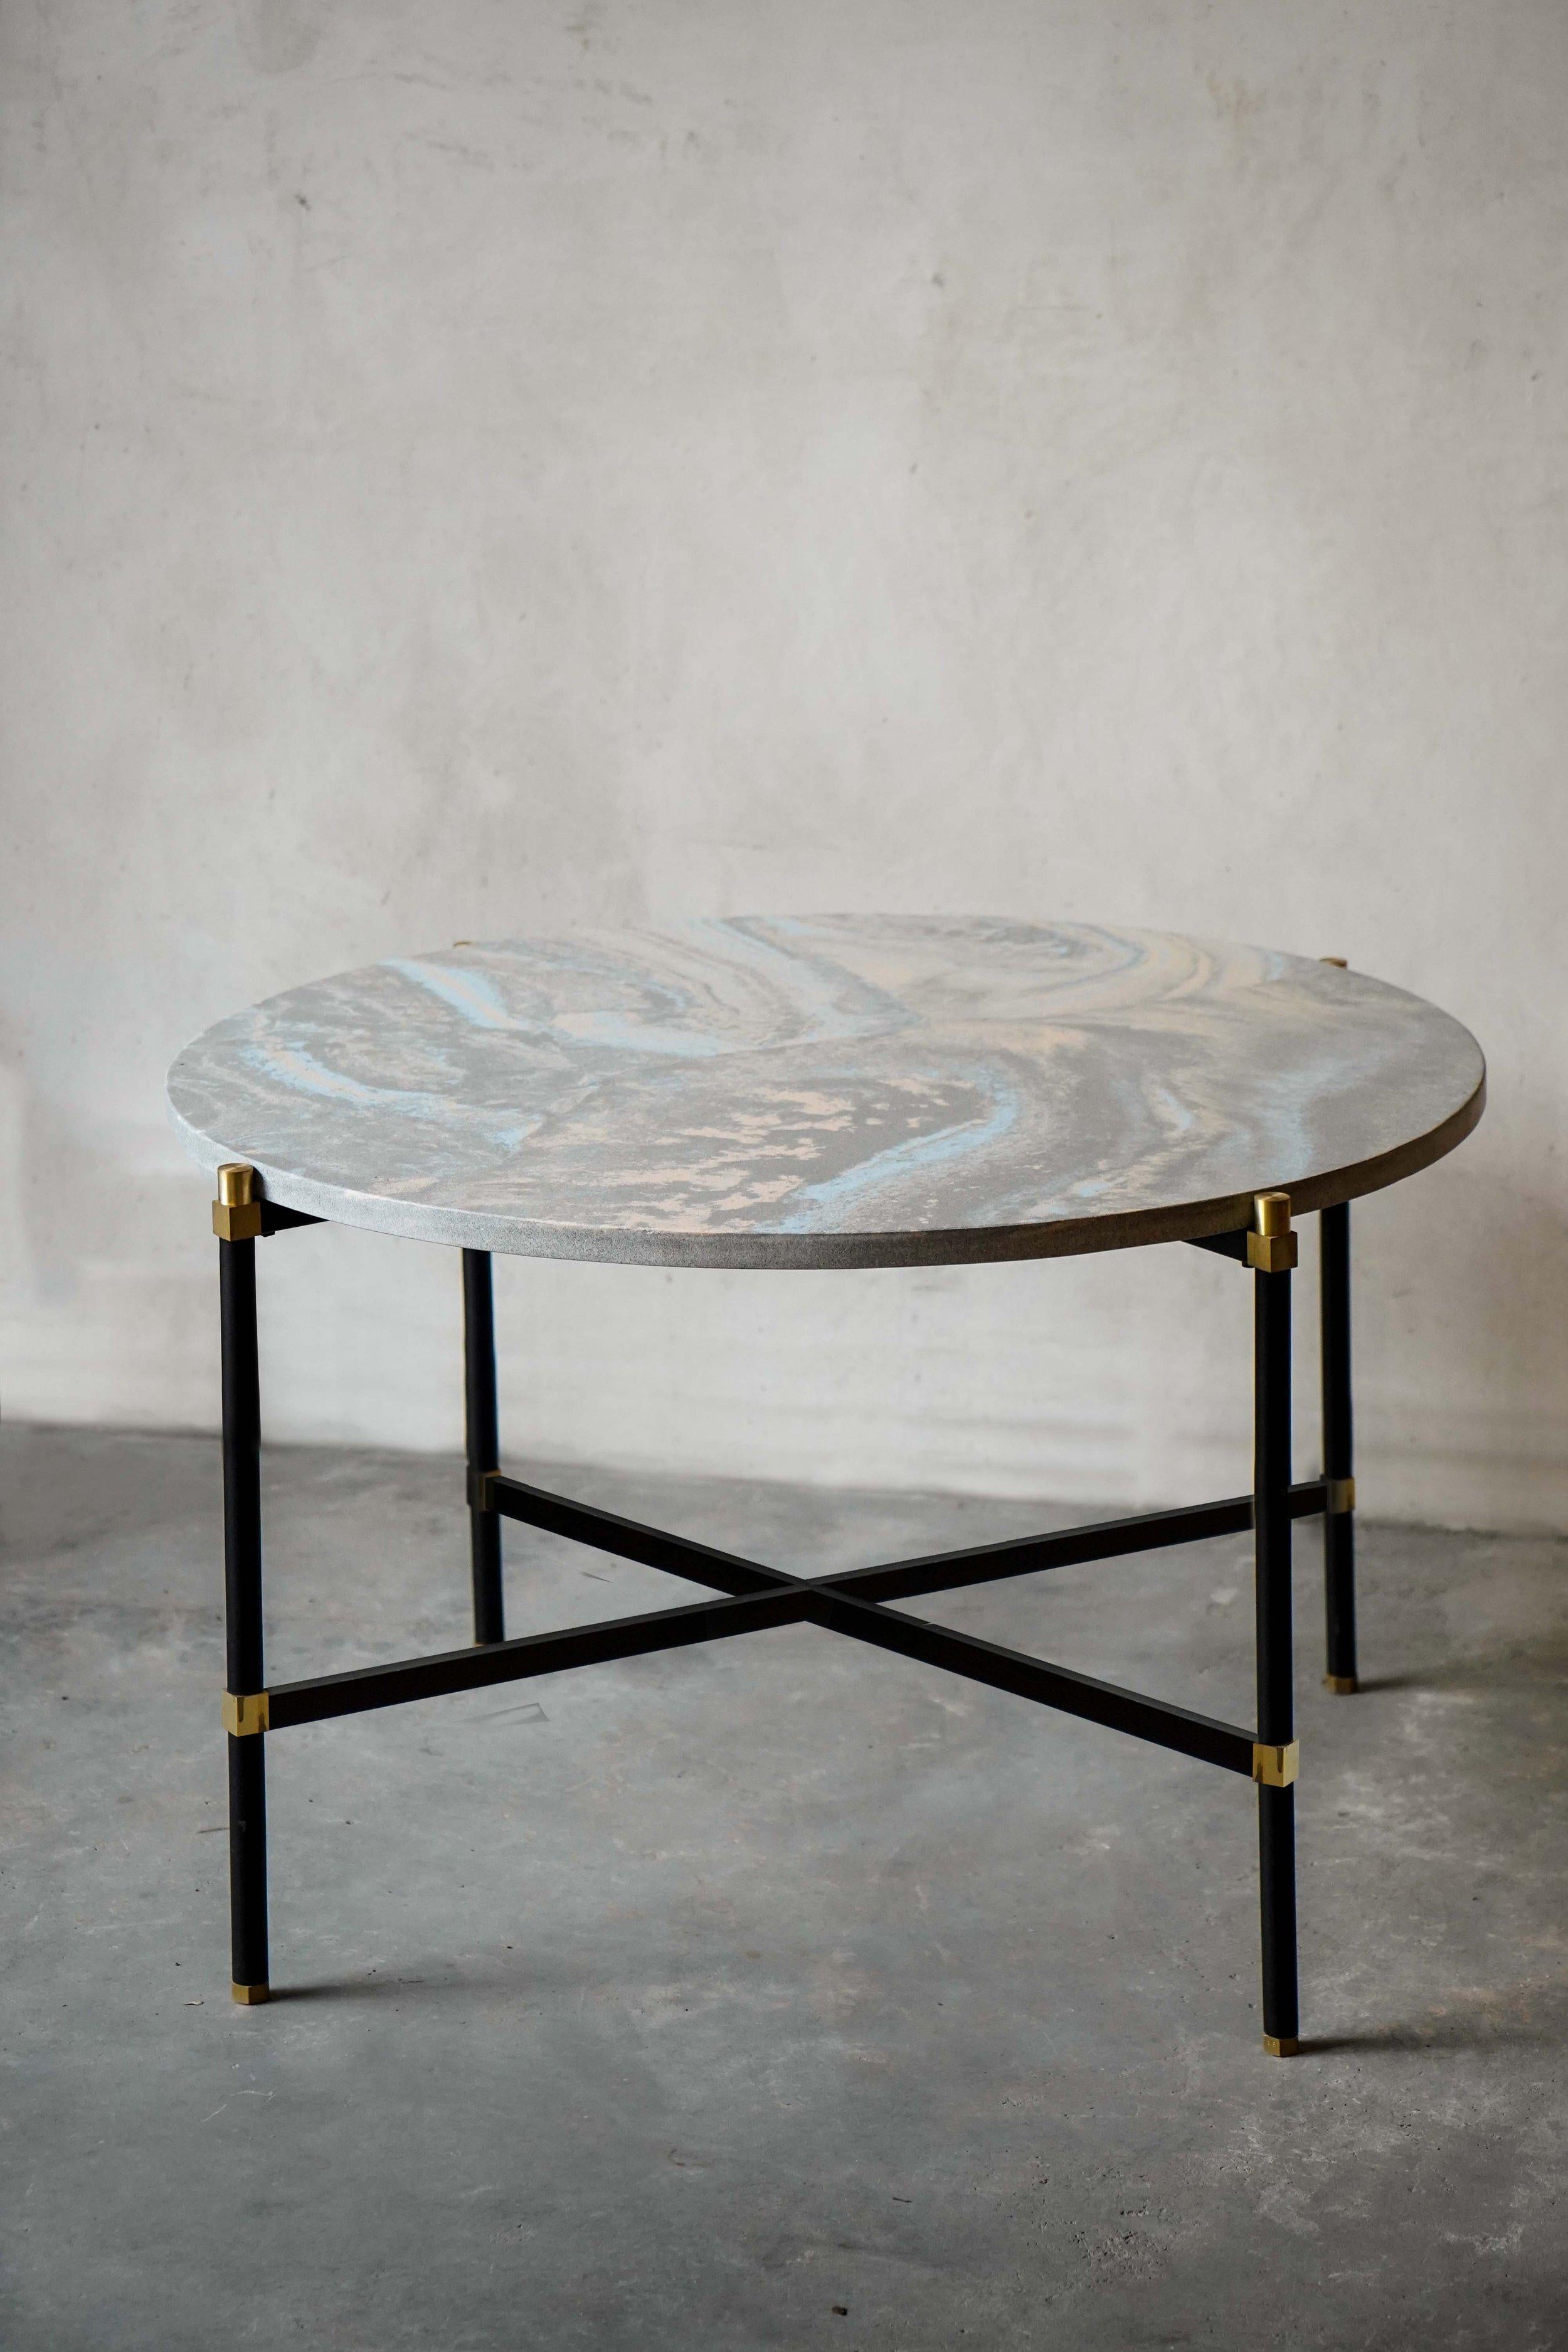 Simple Coffee Table 80 4 Legs by Contain
Abmessungen: T80 x H51 cm 
MATERIALIEN: Eisen, Messing, Terrazzo, Marmor, Stein.
Erhältlich in verschiedenen Ausführungen und Abmessungen.

Die Connector-Möbelkollektion basiert auf Einzelteilen, die sich zu